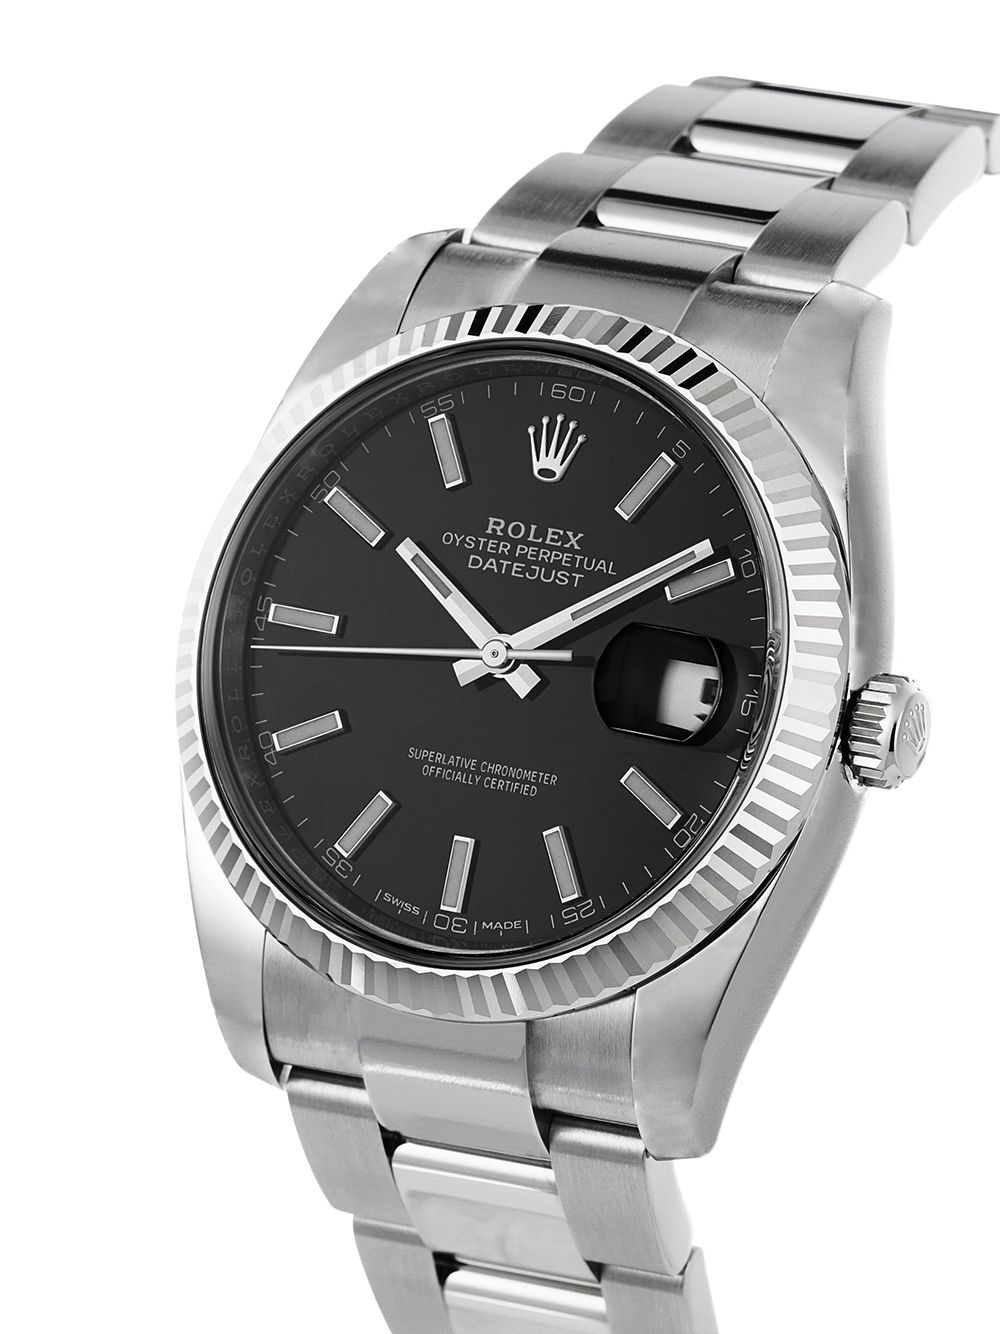 фото Rolex наручные часы oyster perpetual datejust 41 мм